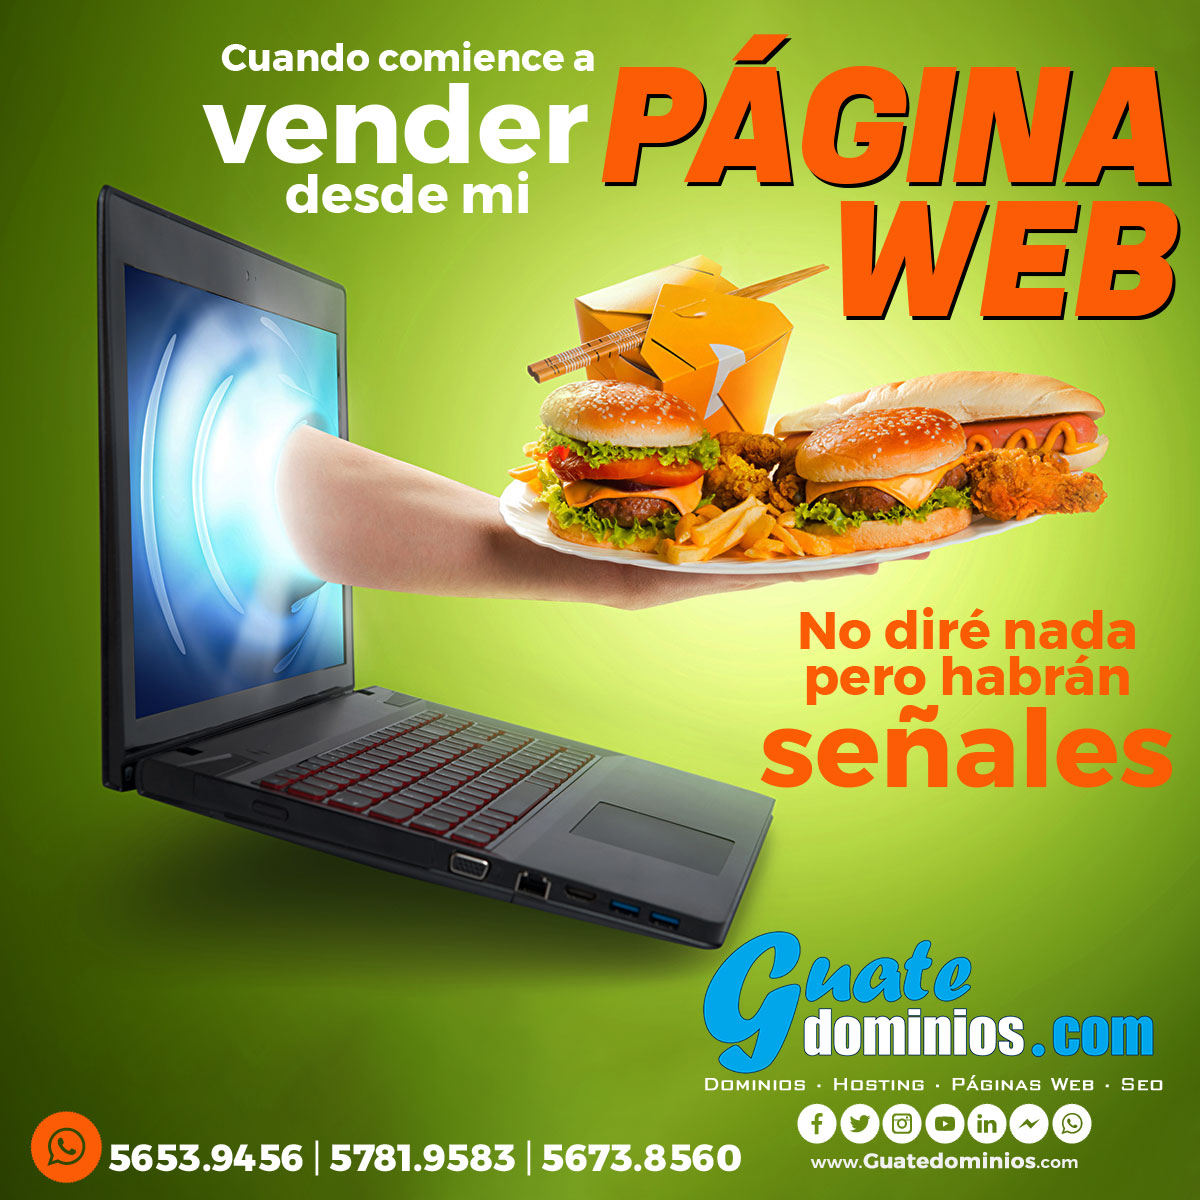 Guatedominios.com - Pginas Web